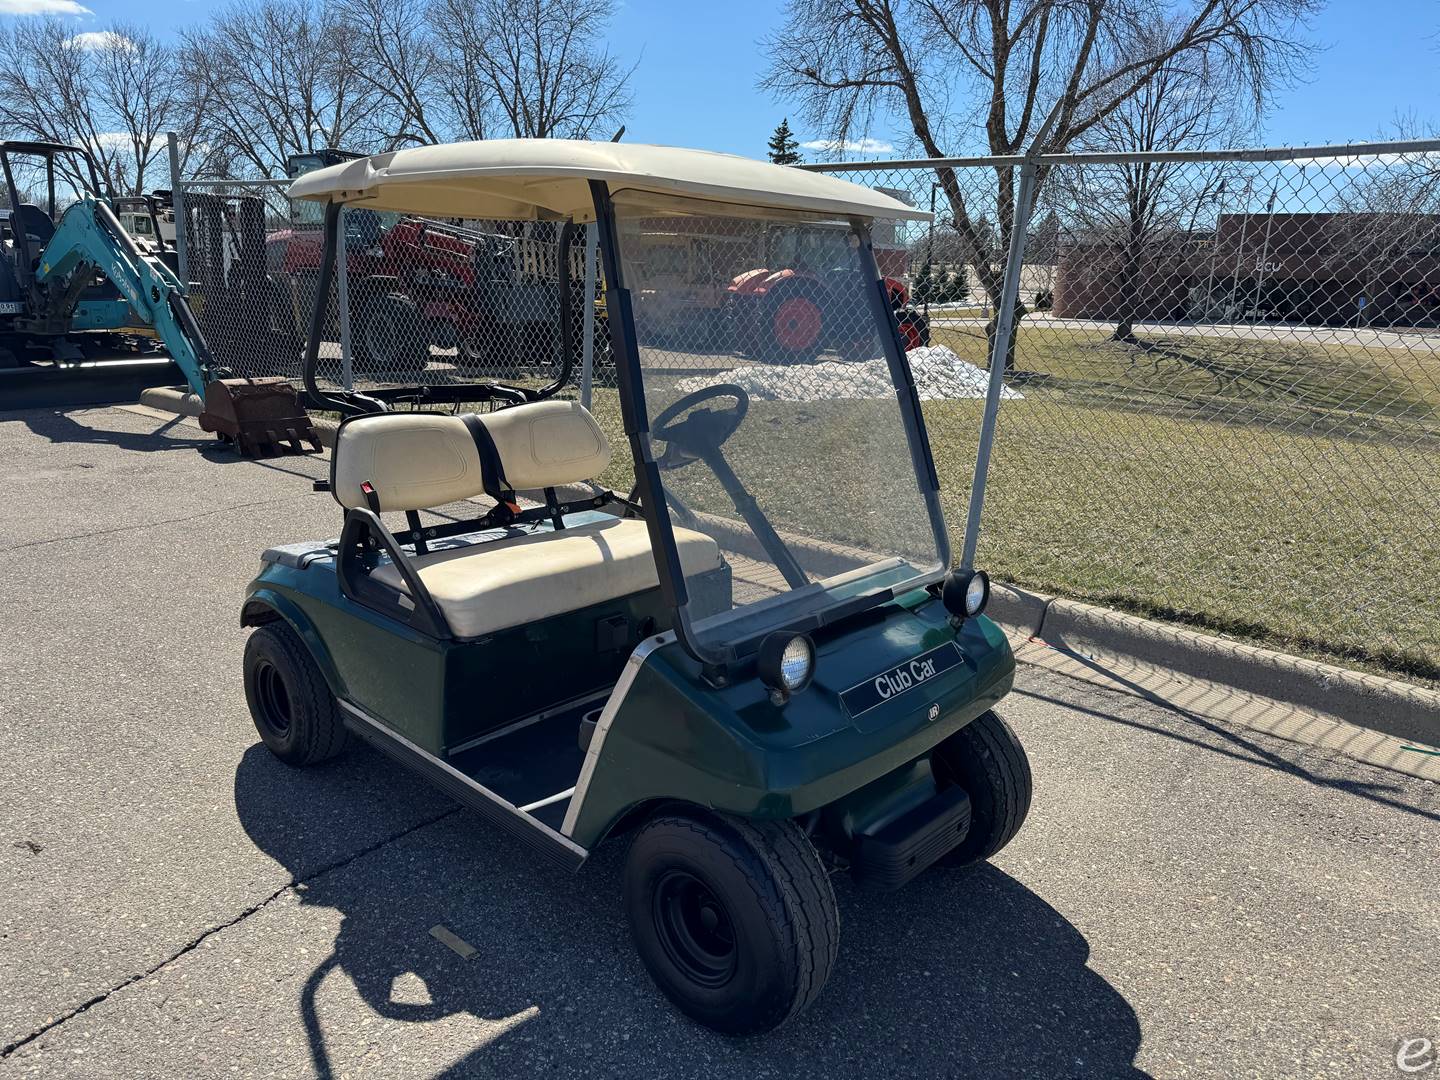 Club Car Club Car golf cart